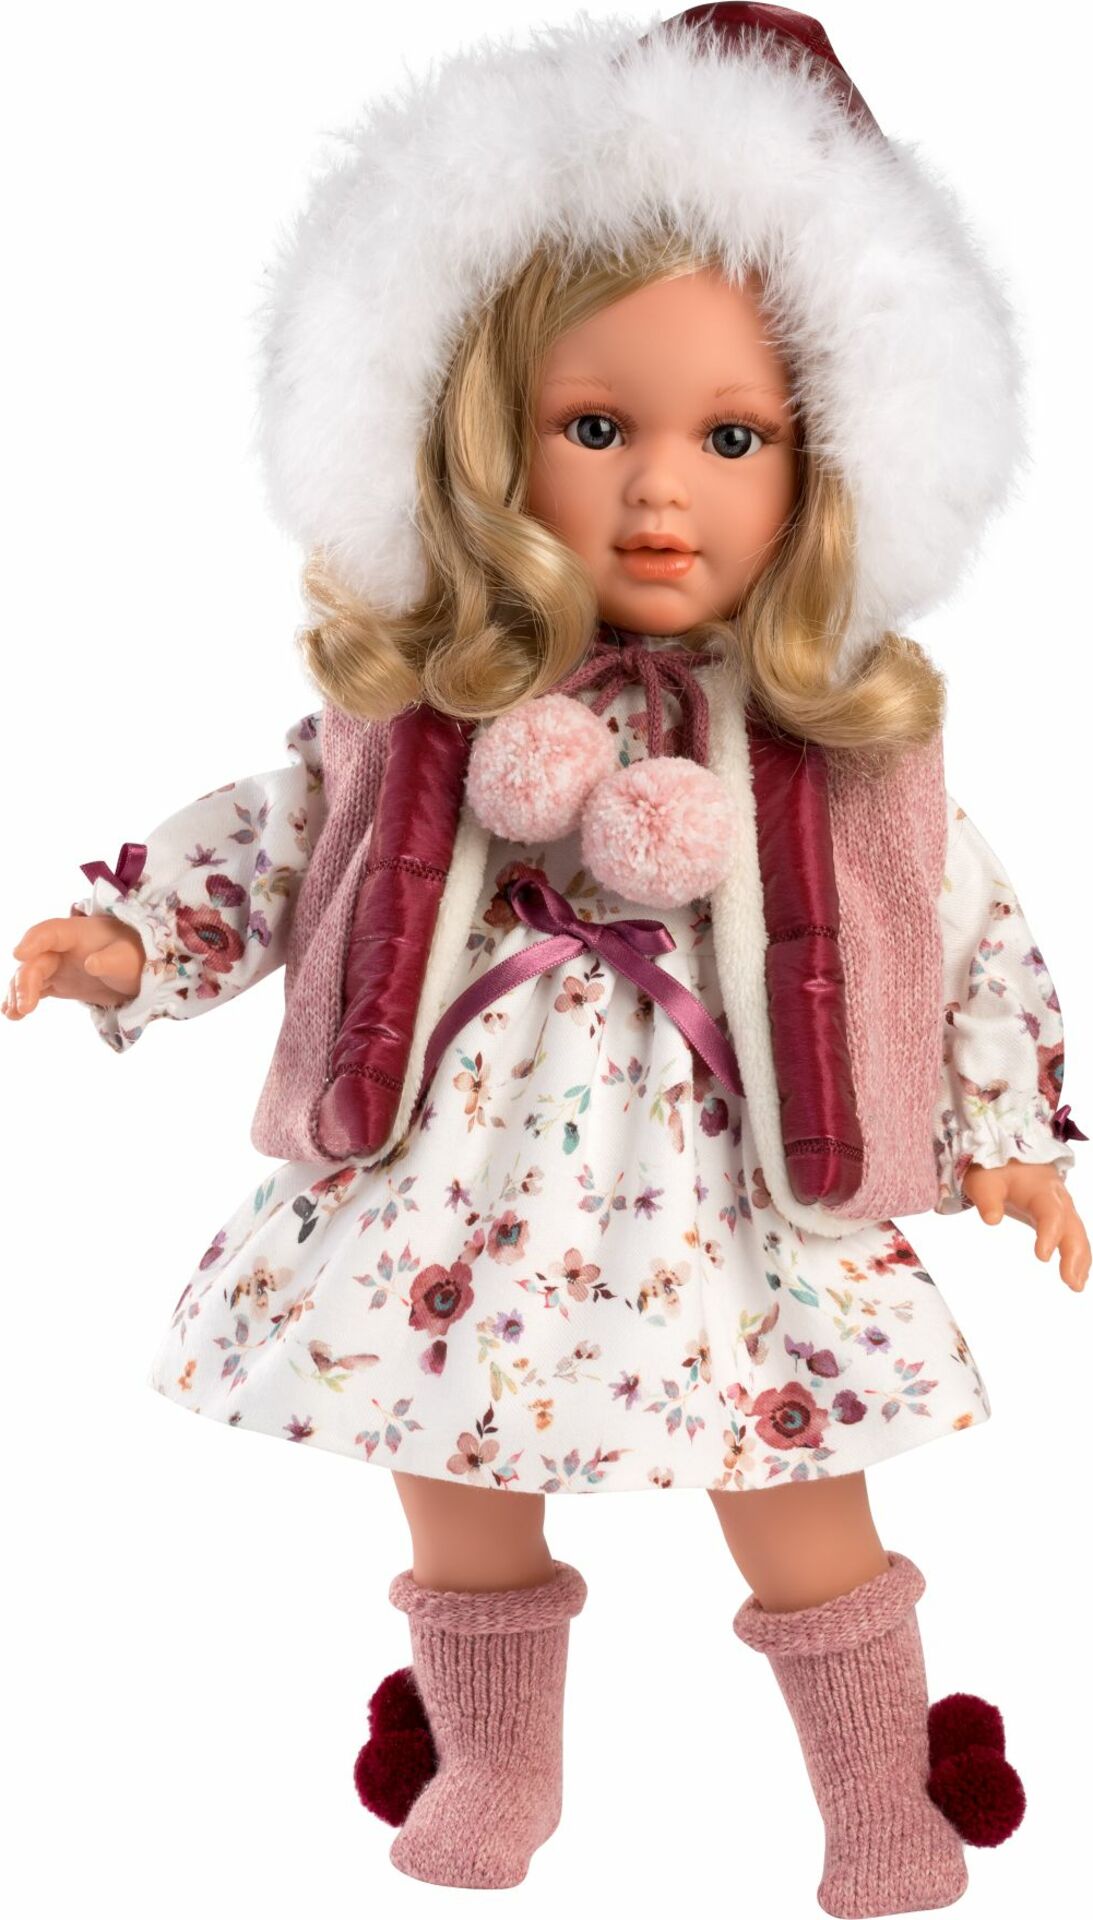 Llorens 54037 LUCIA - realistická panenka s měkkým látkovým tělem - 40 cm